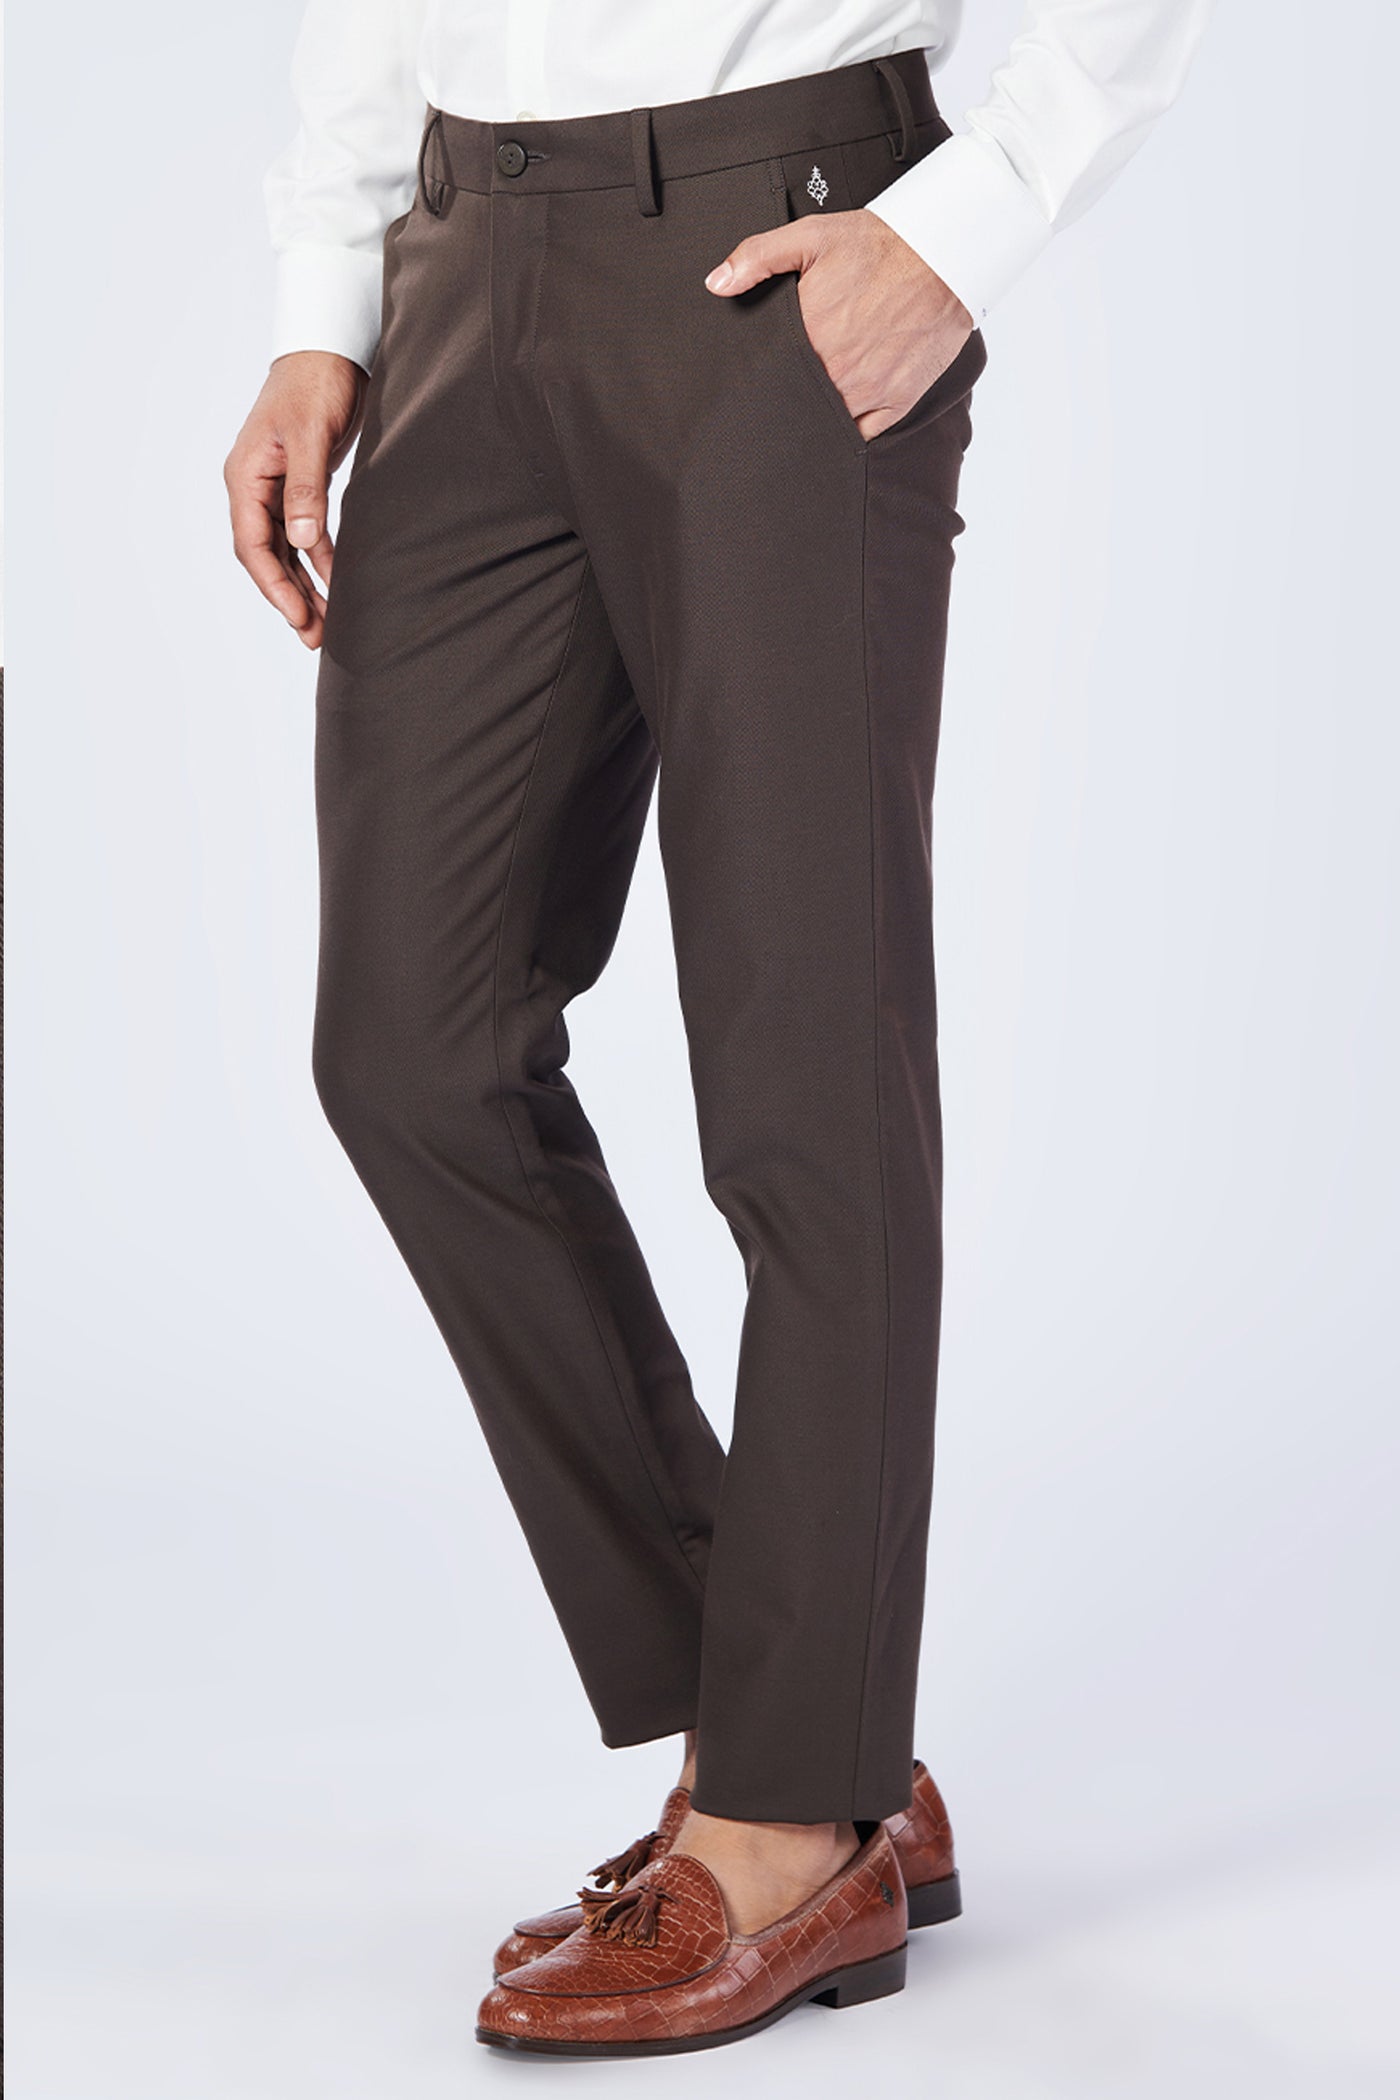 Shantanu & Nikhil Menswear Choco Slim Fit Trousers indian designer wear online shopping melange singapore